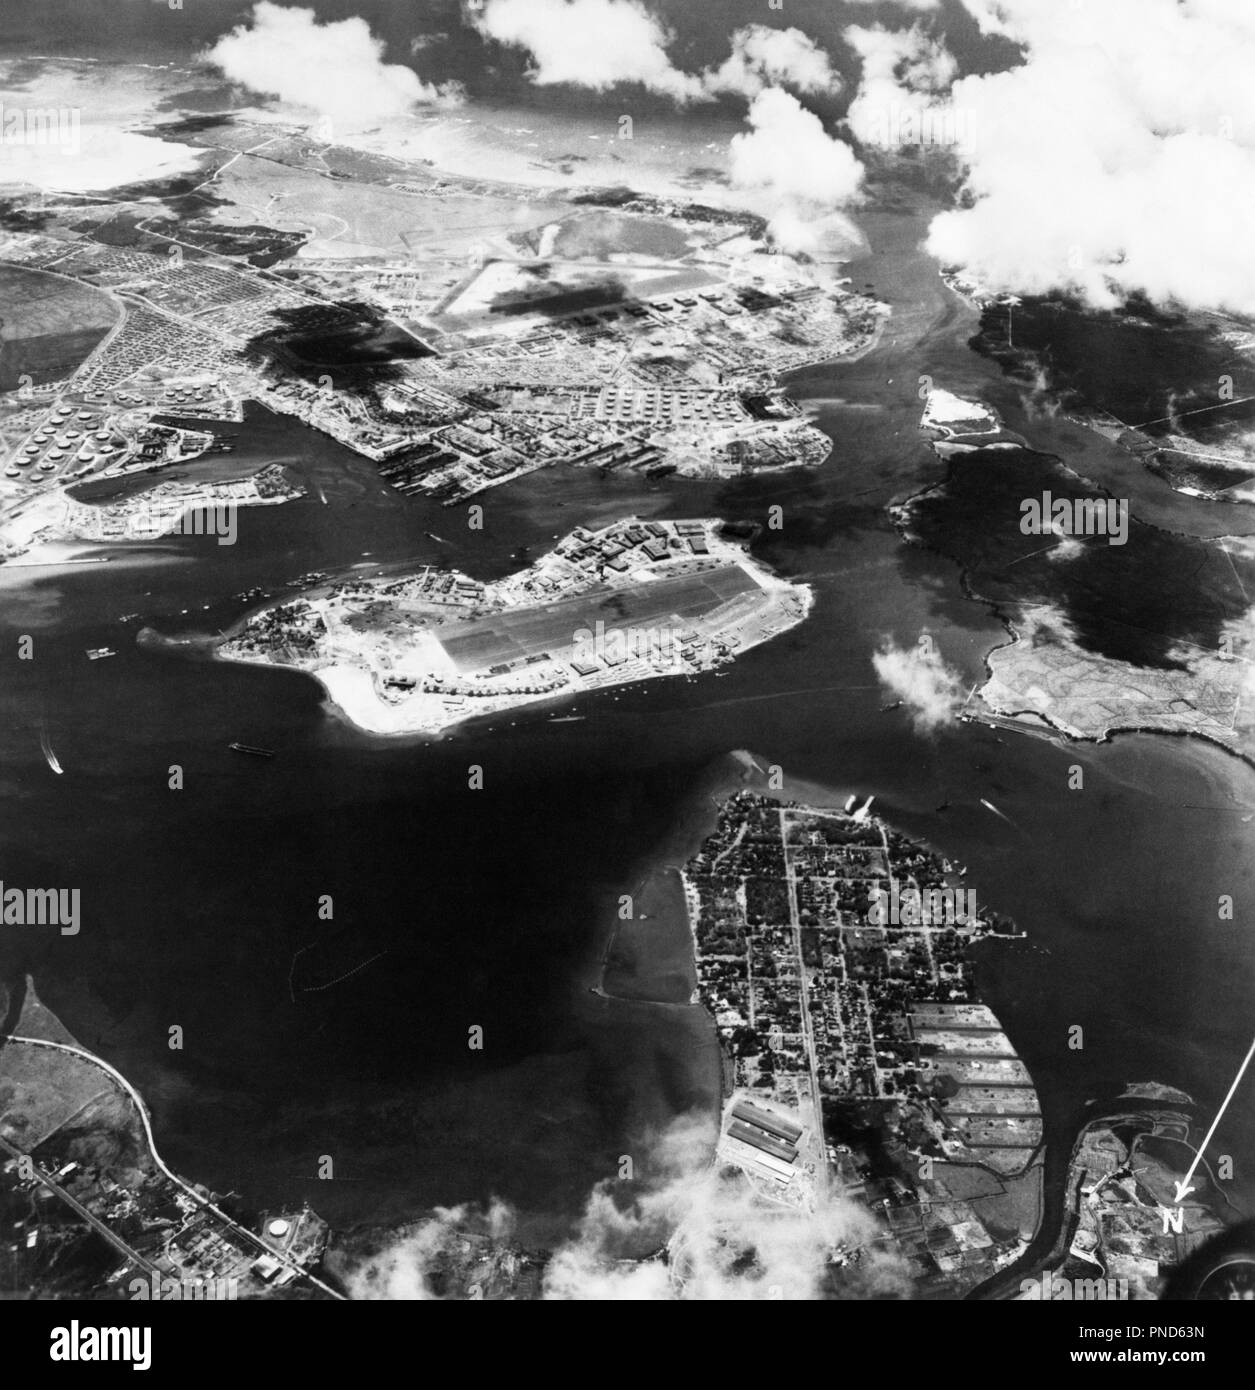 1940 Fotografía aérea de Pearl Harbor, Hawaii antes del atentado perpetrado por los japoneses EL 7 DE DICIEMBRE DE 1941 - q74703 CPC001 HARS ISLAS GUERRAS MUNDIALES GUERRA MUNDIAL LA SEGUNDA GUERRA MUNDIAL LOS BOMBARDEOS DE LA II GUERRA MUNDIAL DICIEMBRE HI 7 GUERRA MUNDIAL 2 7 de diciembre de 1941 1941 conflictivos vista aérea batallando en blanco y negro de las islas hawaianas INFAMIA ANTIGUO ANTES DE LAS ISLAS DEL PACÍFICO Foto de stock